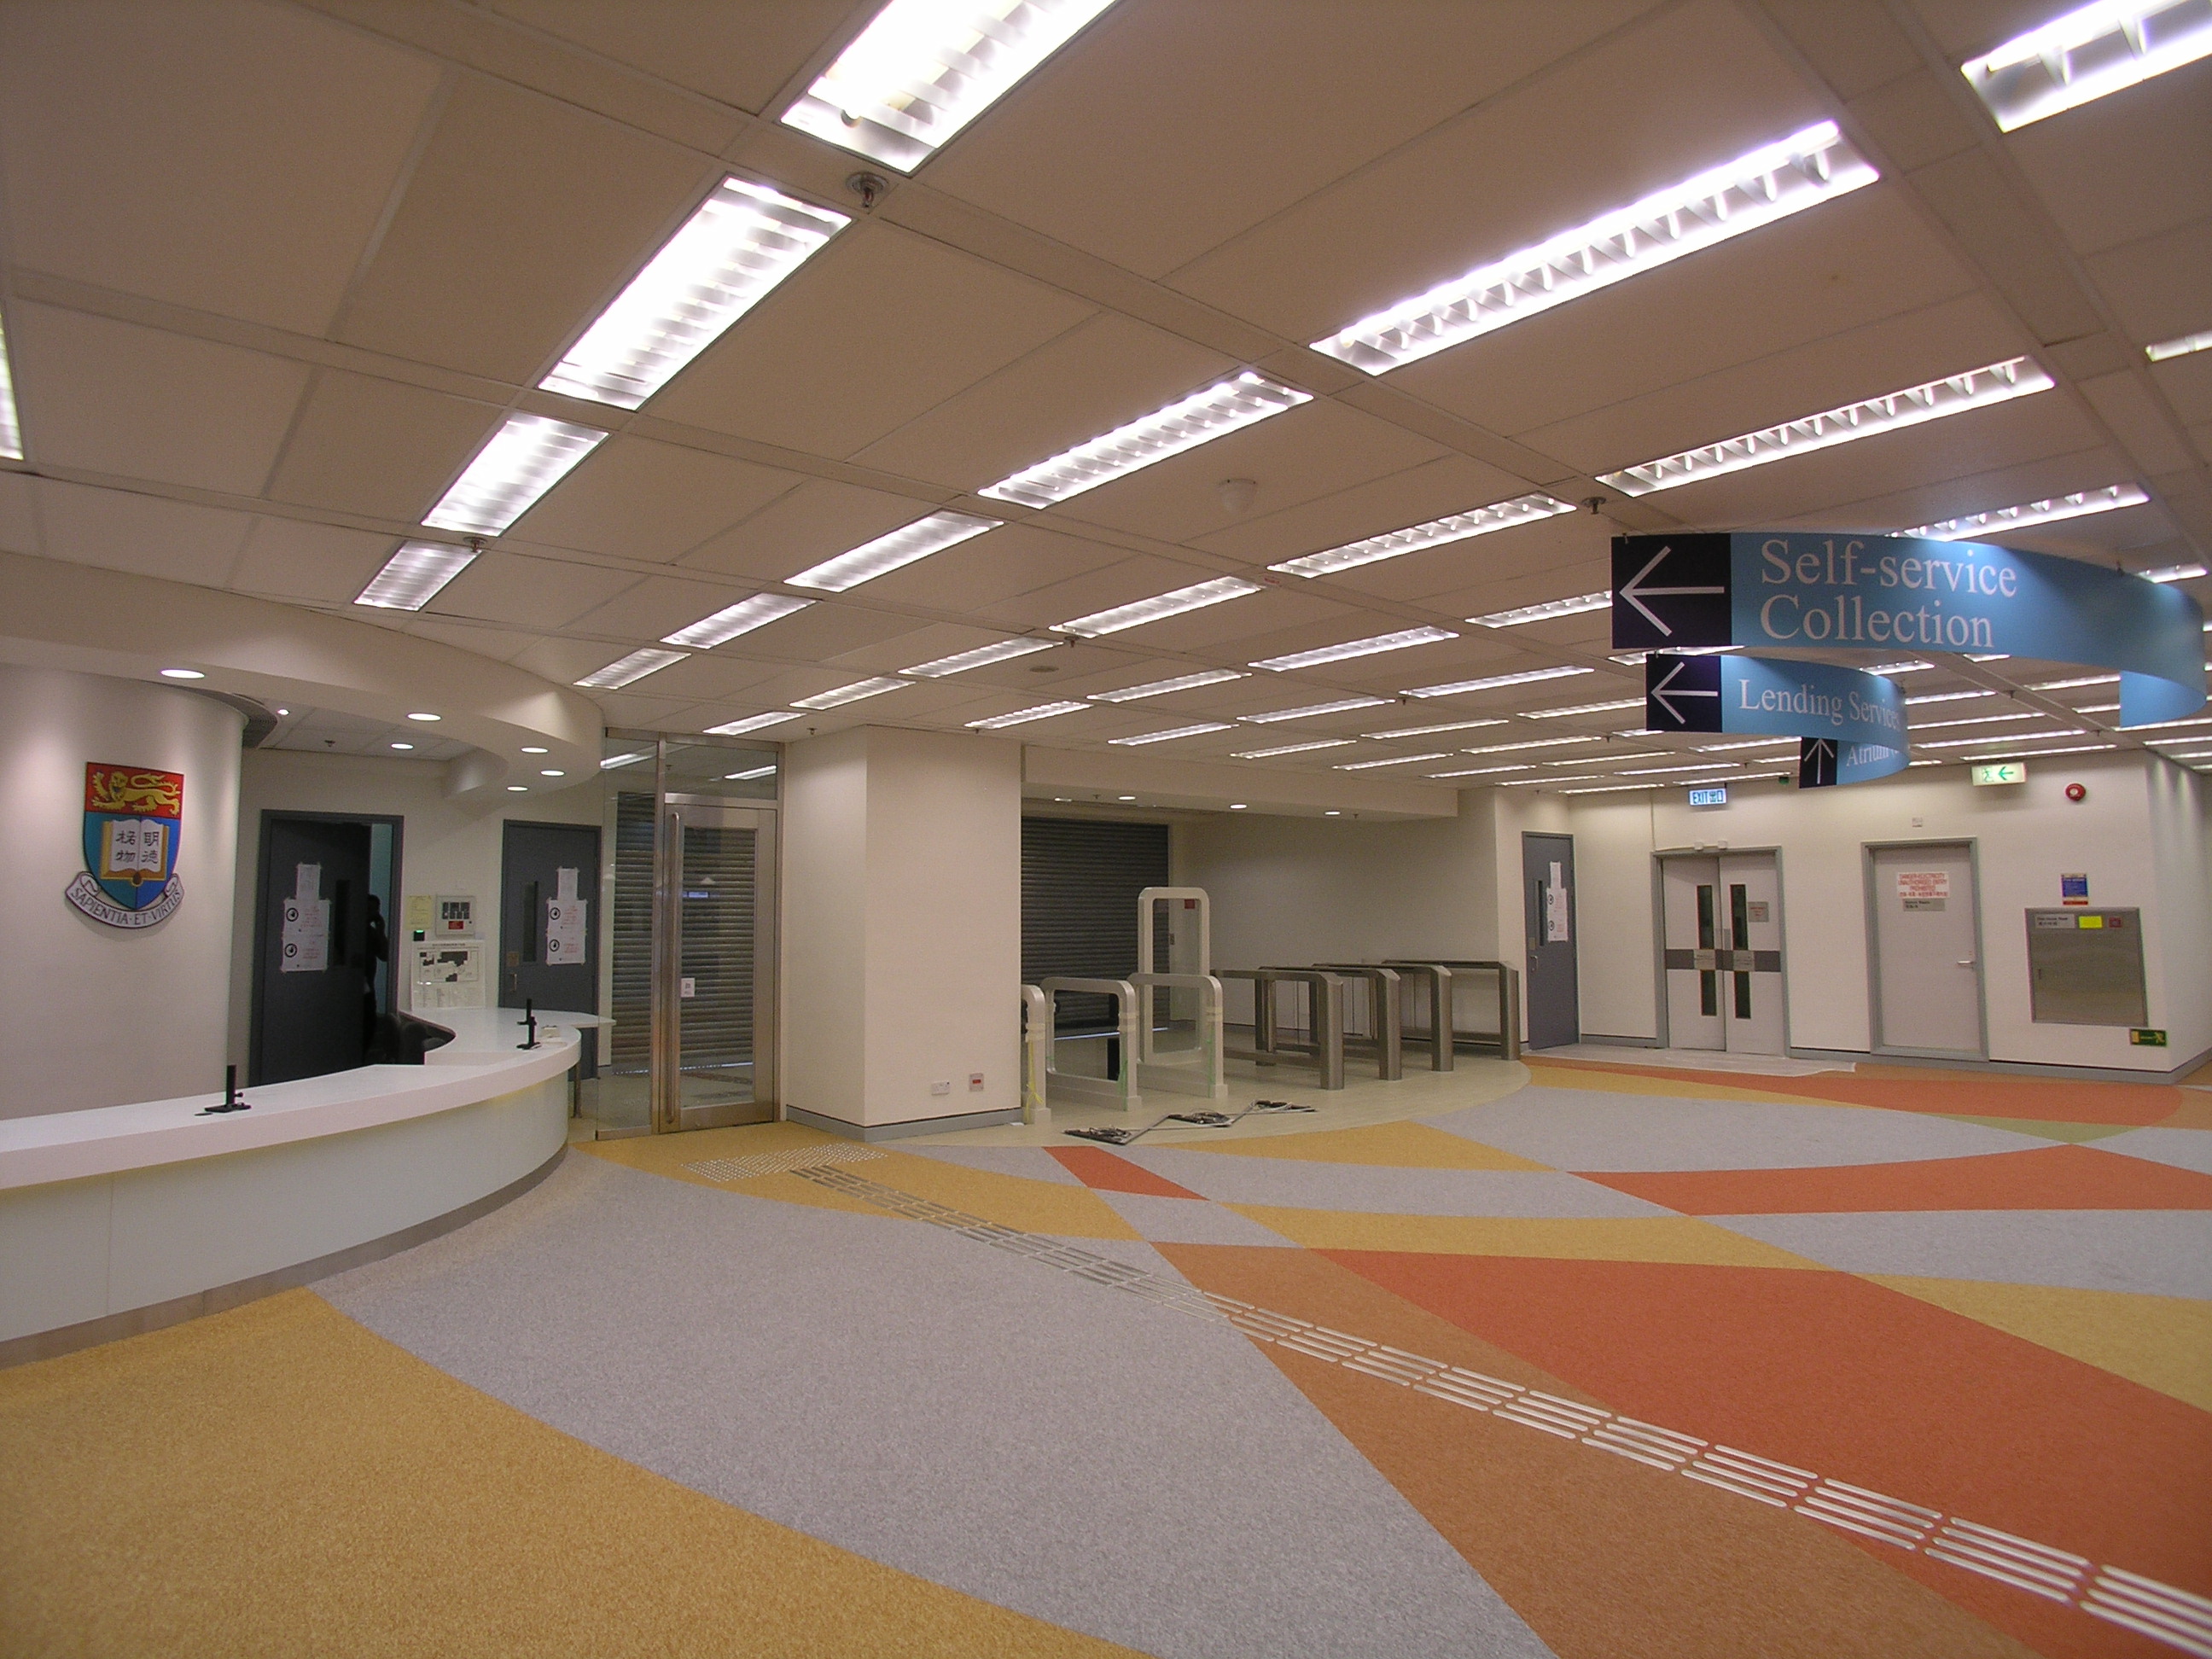 香港大学图书馆大楼(新翼)2楼空间重组工程